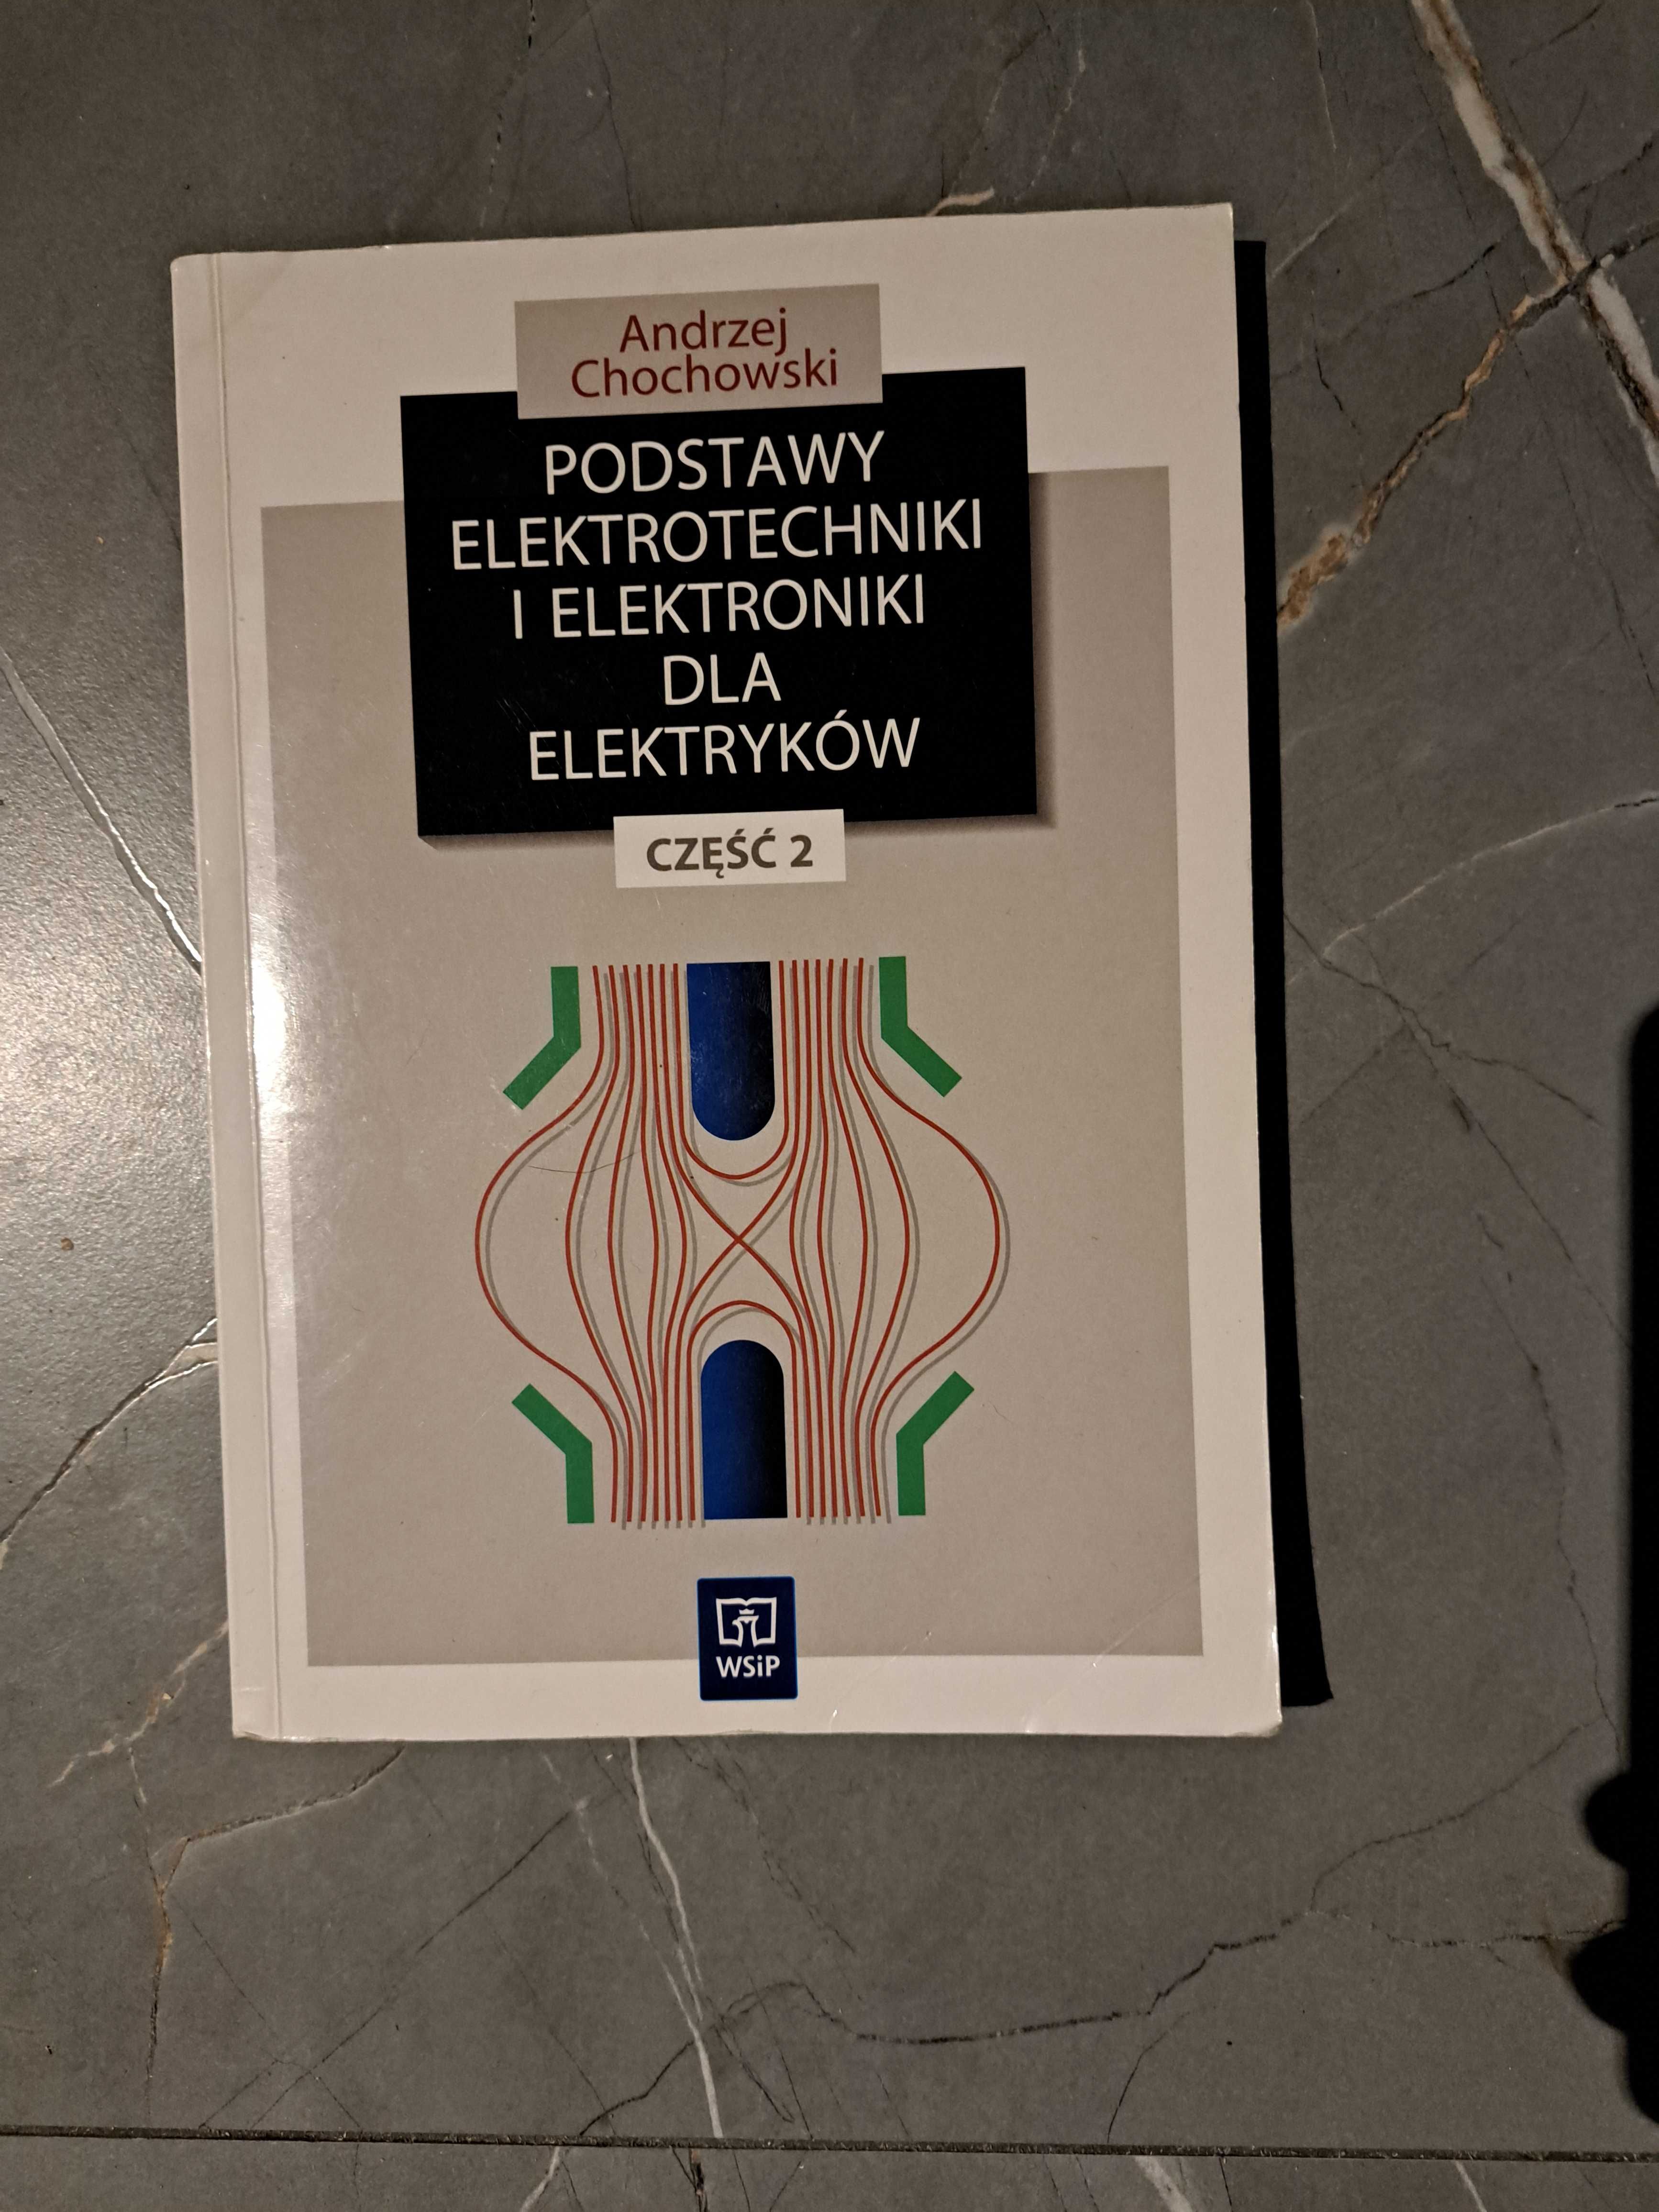 eletrotechniki i elektroniki dla elektryków Andrzej chochowski